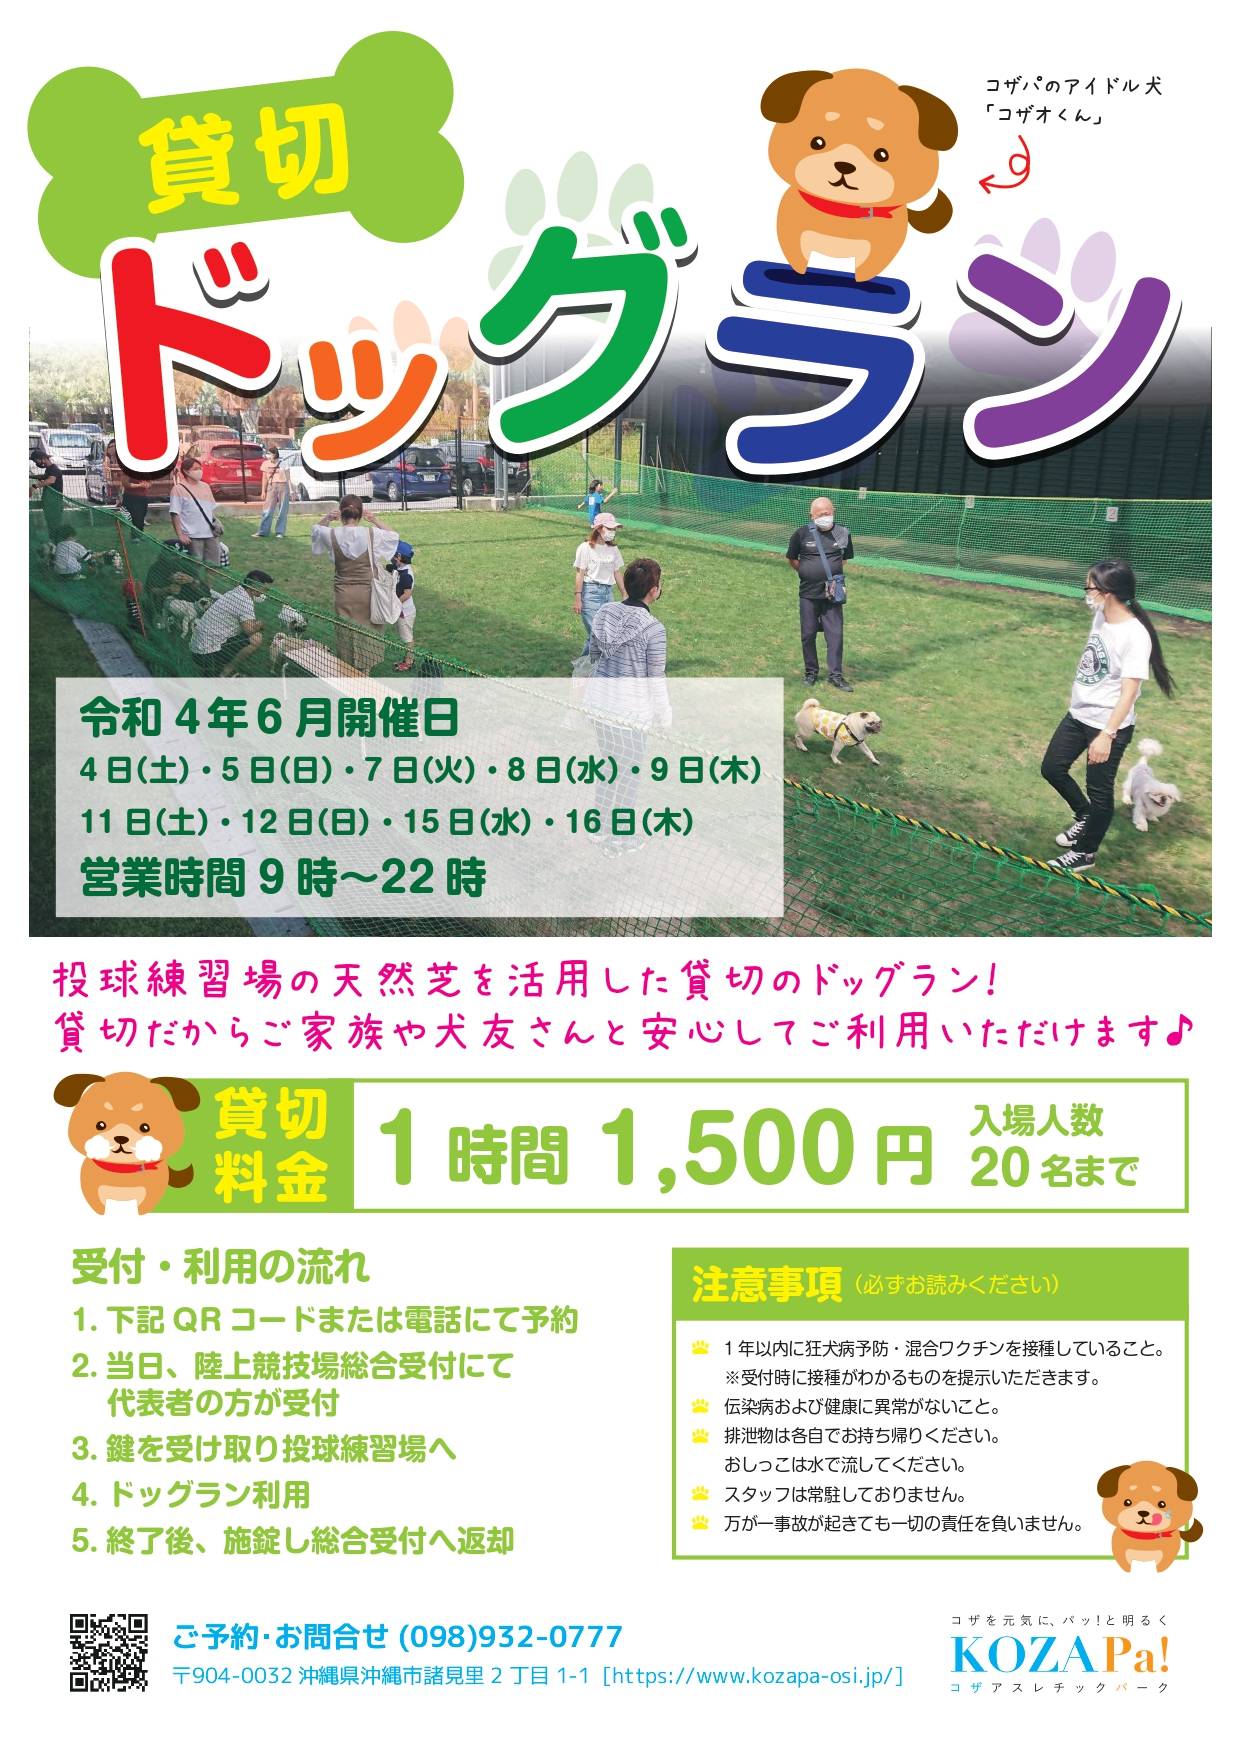 【6月・7月】貸切ドッグラン開催日程のお知らせ